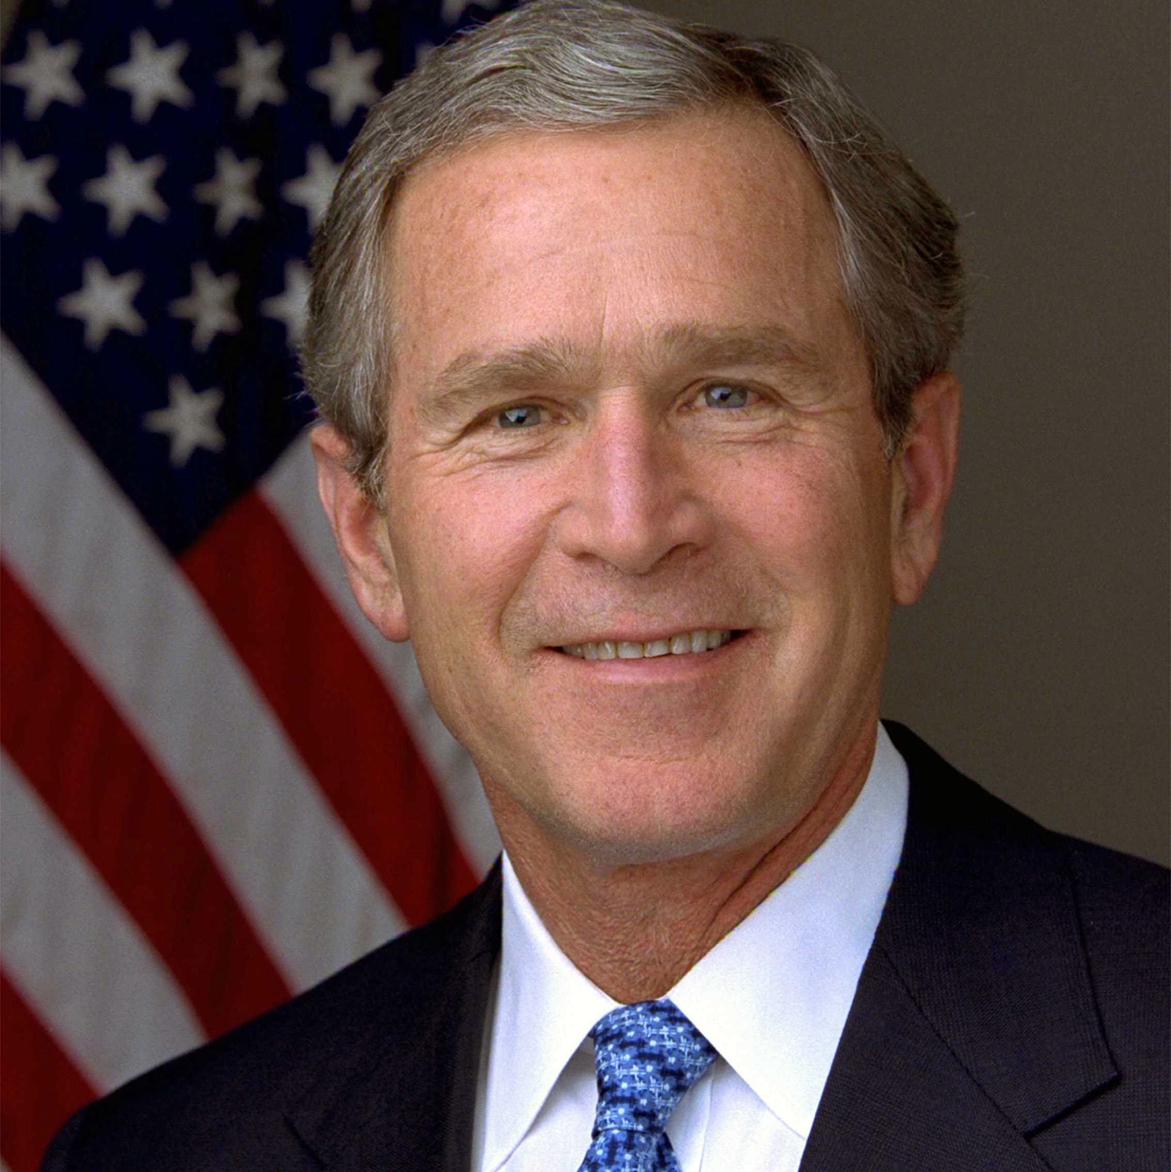 George W Bush's images